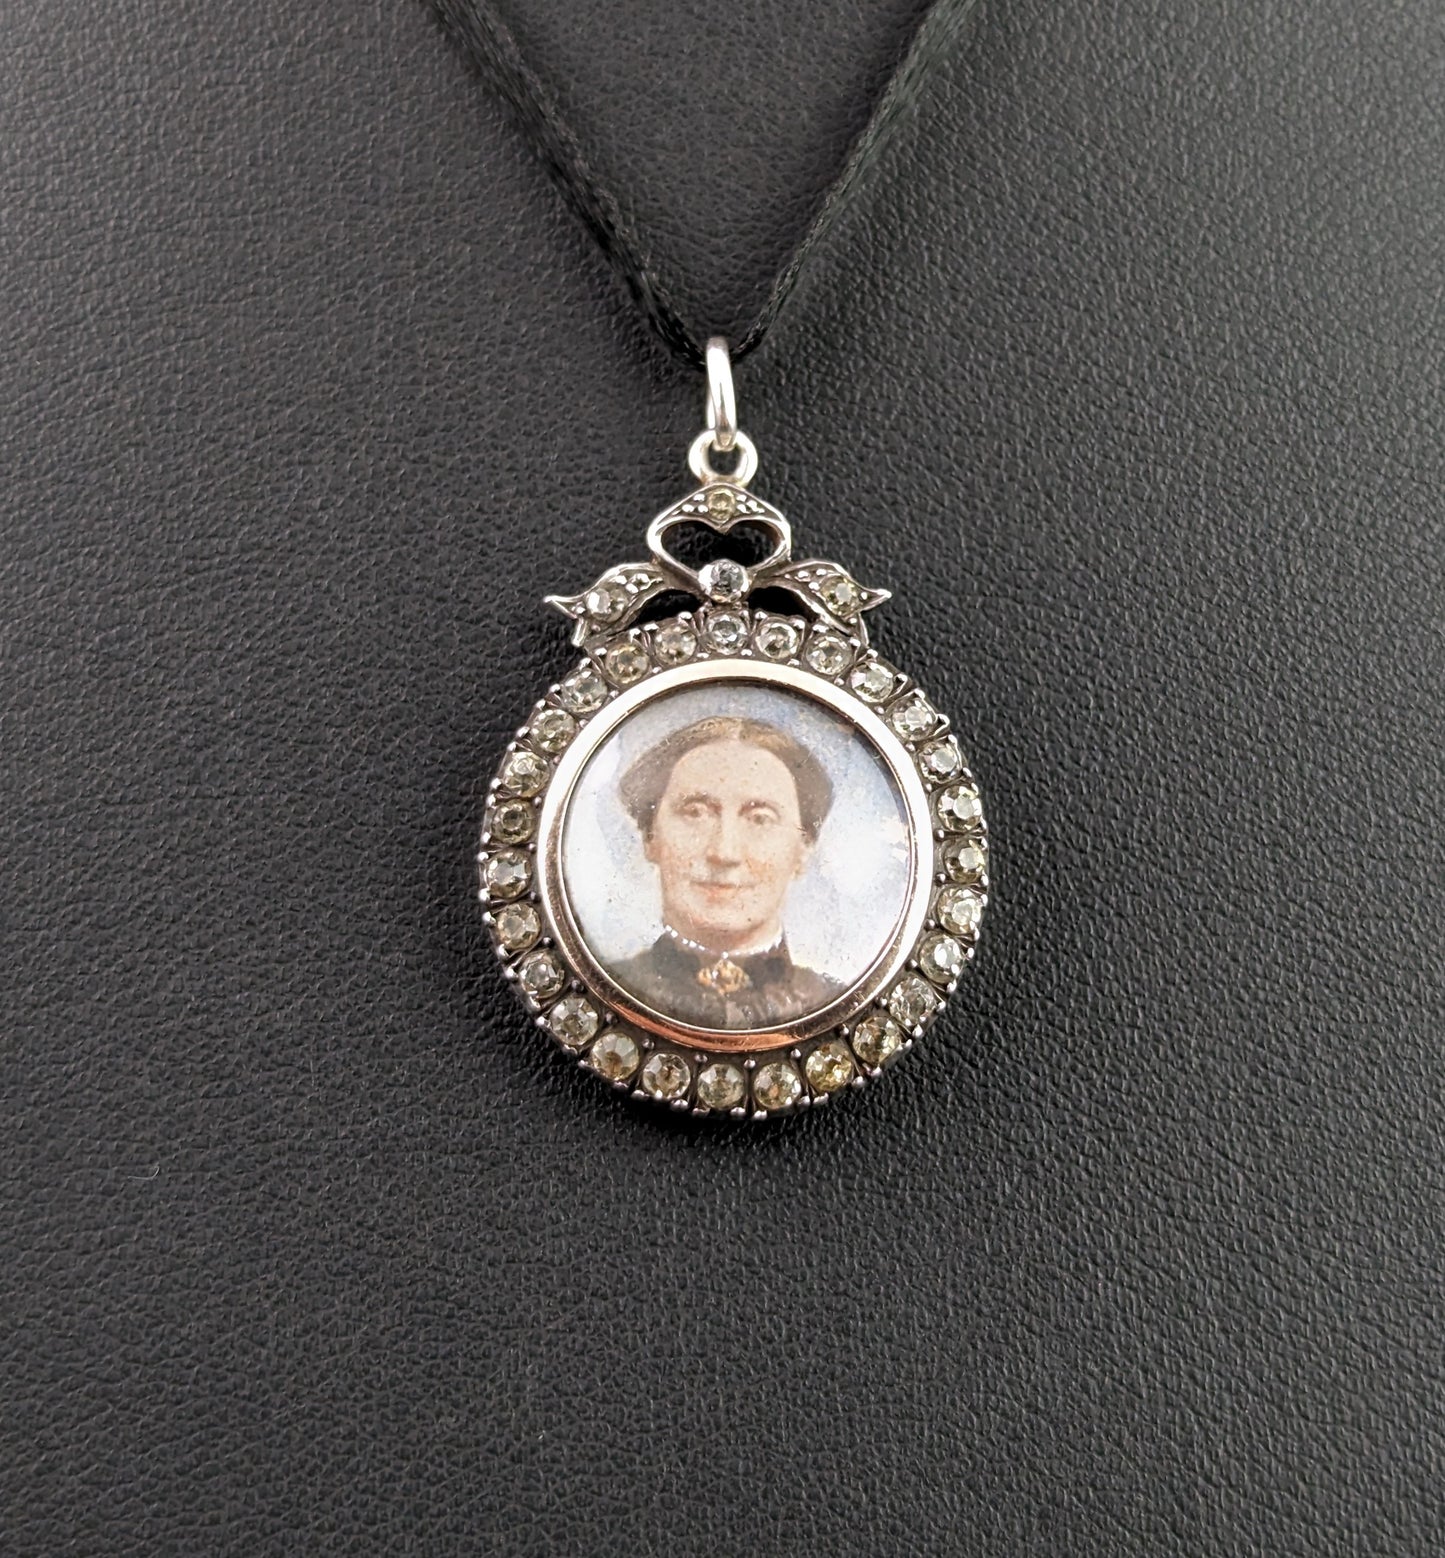 Antique paste locket pendant, portrait, 900 silver